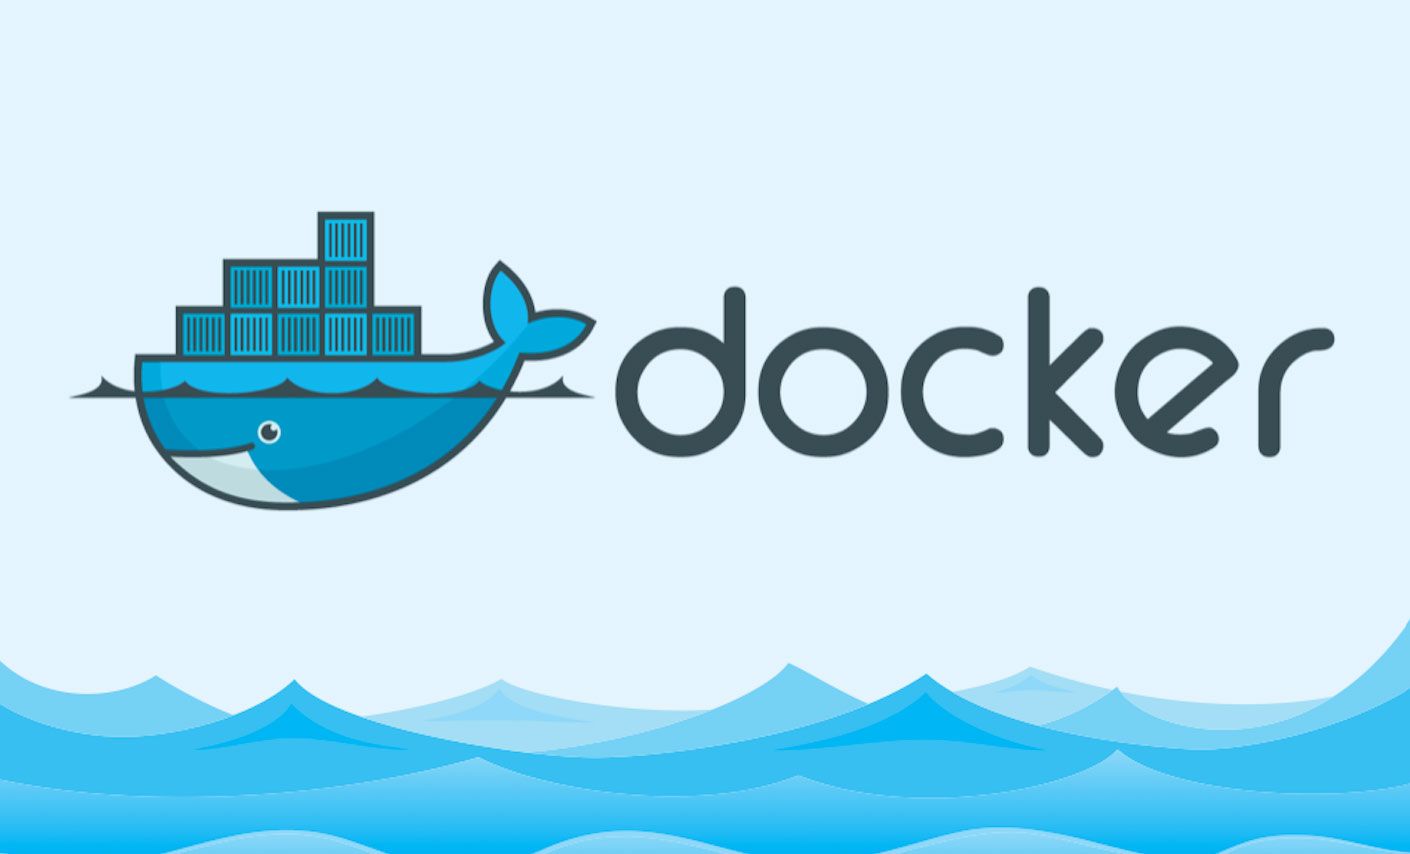 Installation and running using Docker